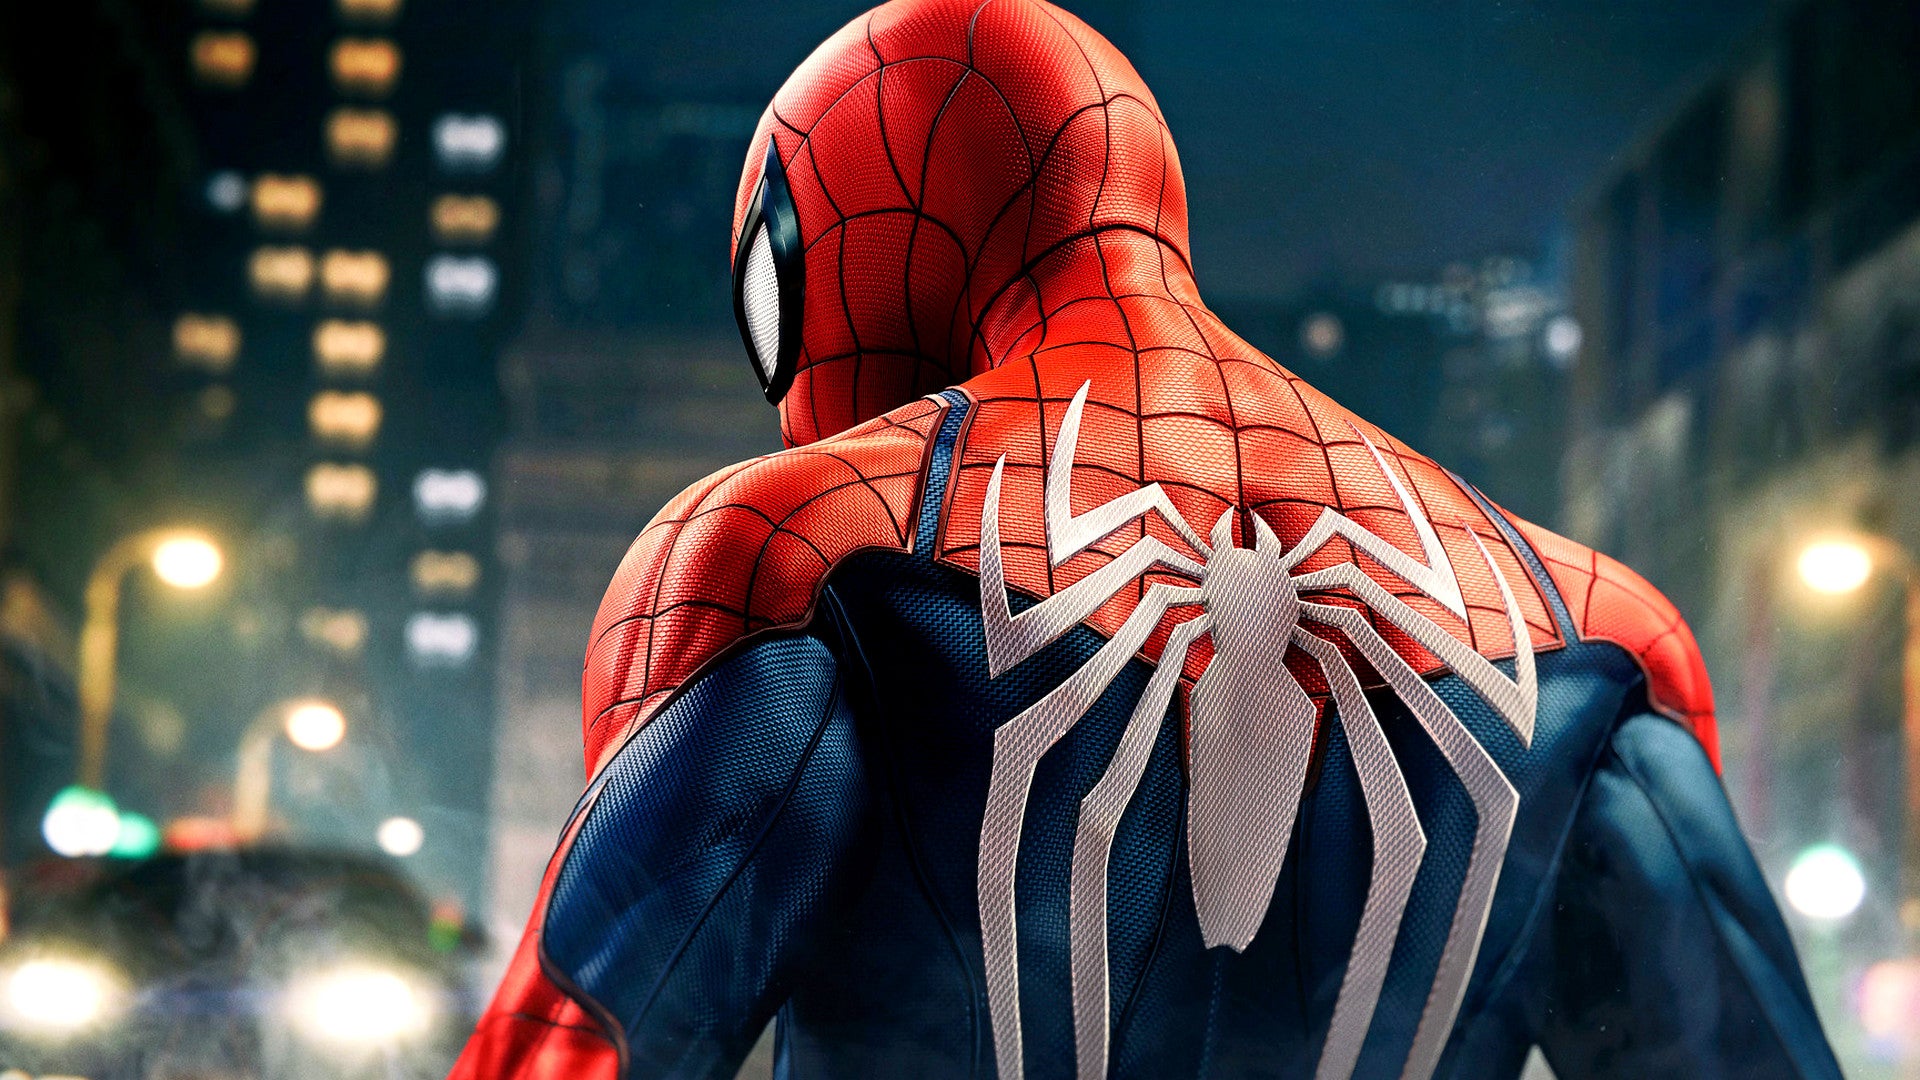 Bilder zu Spider-Man Remastered PC: Bis zur Perfektion fehlen noch ein oder zwei Patches